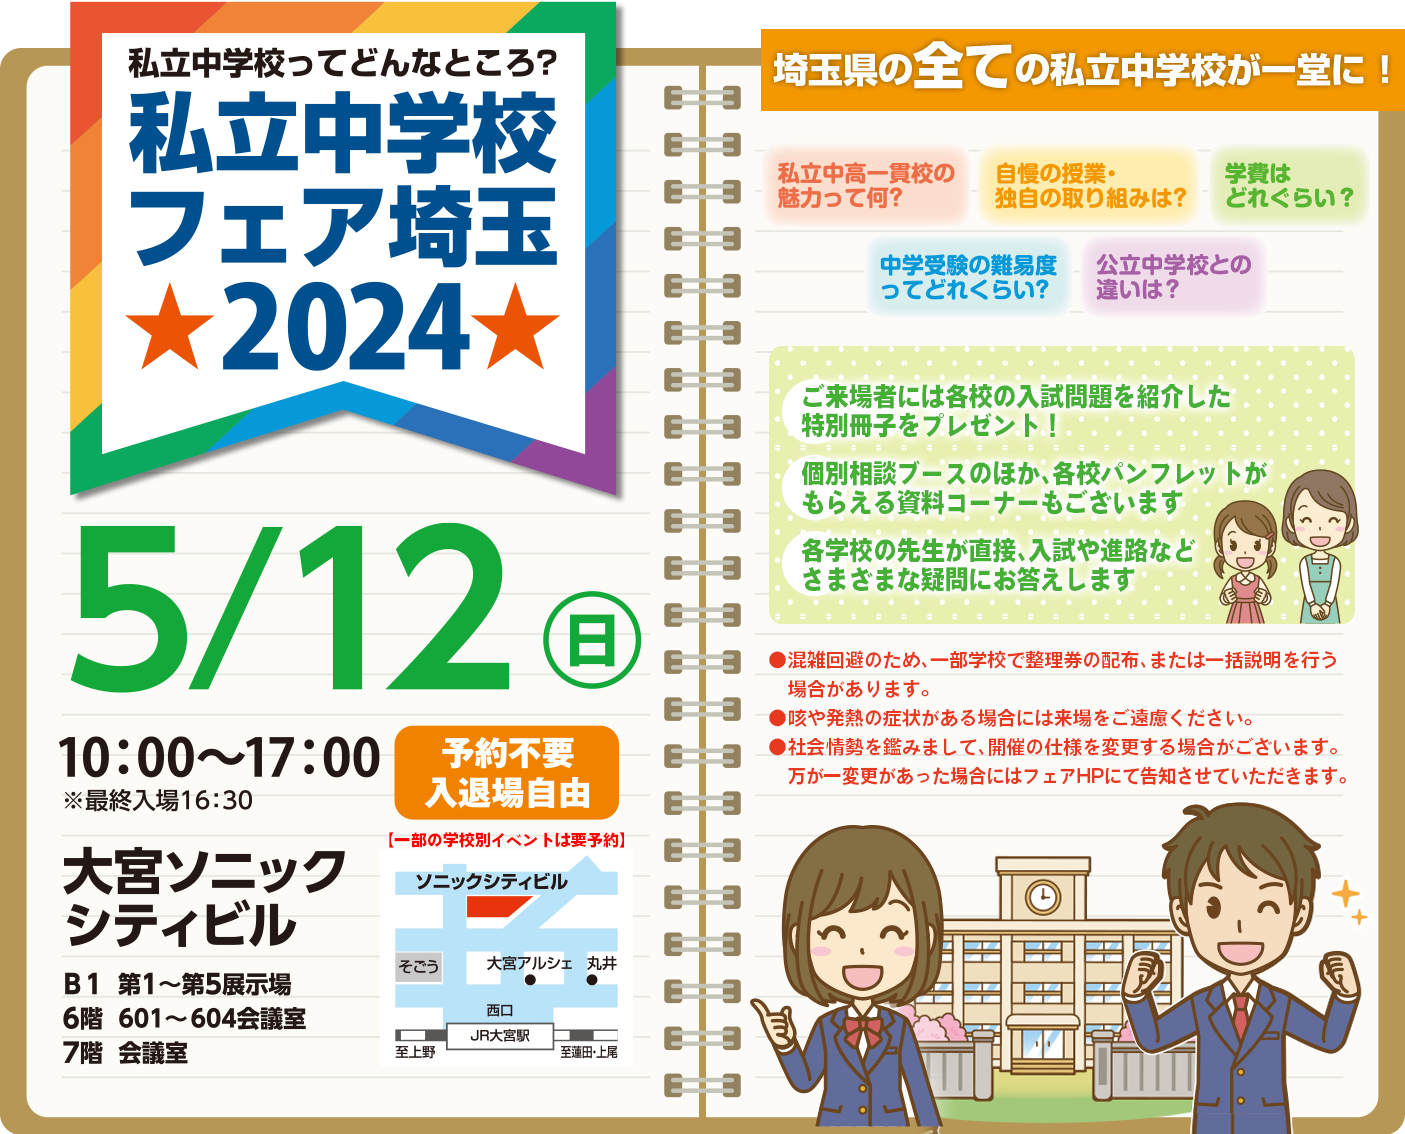 私立中学校フェア埼玉 2022